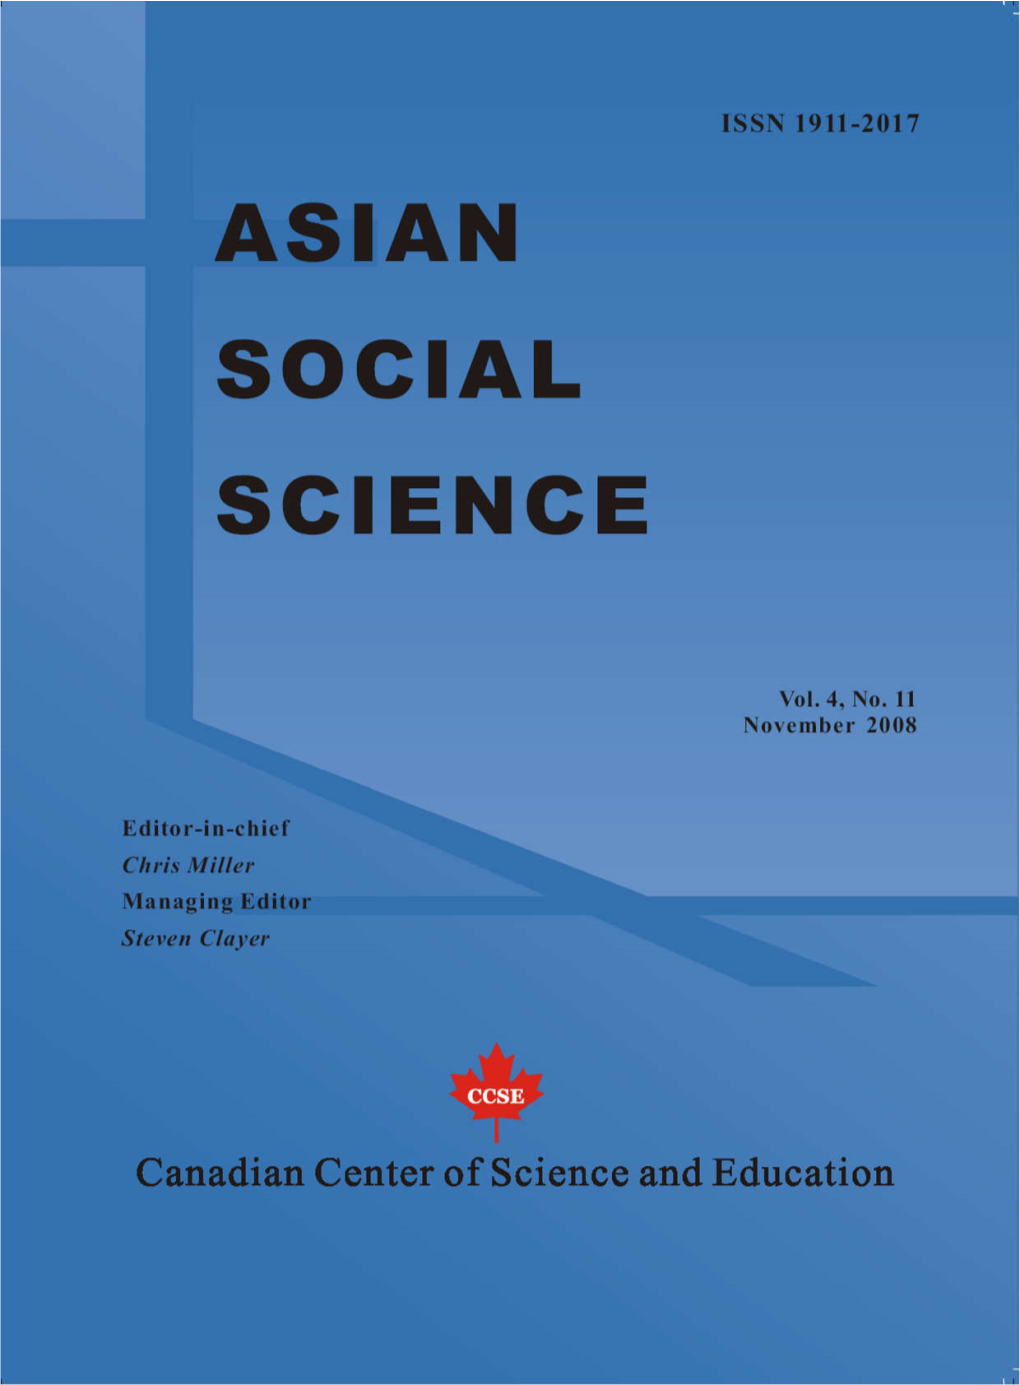 Asian Social Science, ISSN 1911-2017, Vol. 4, No. 2, November 2008